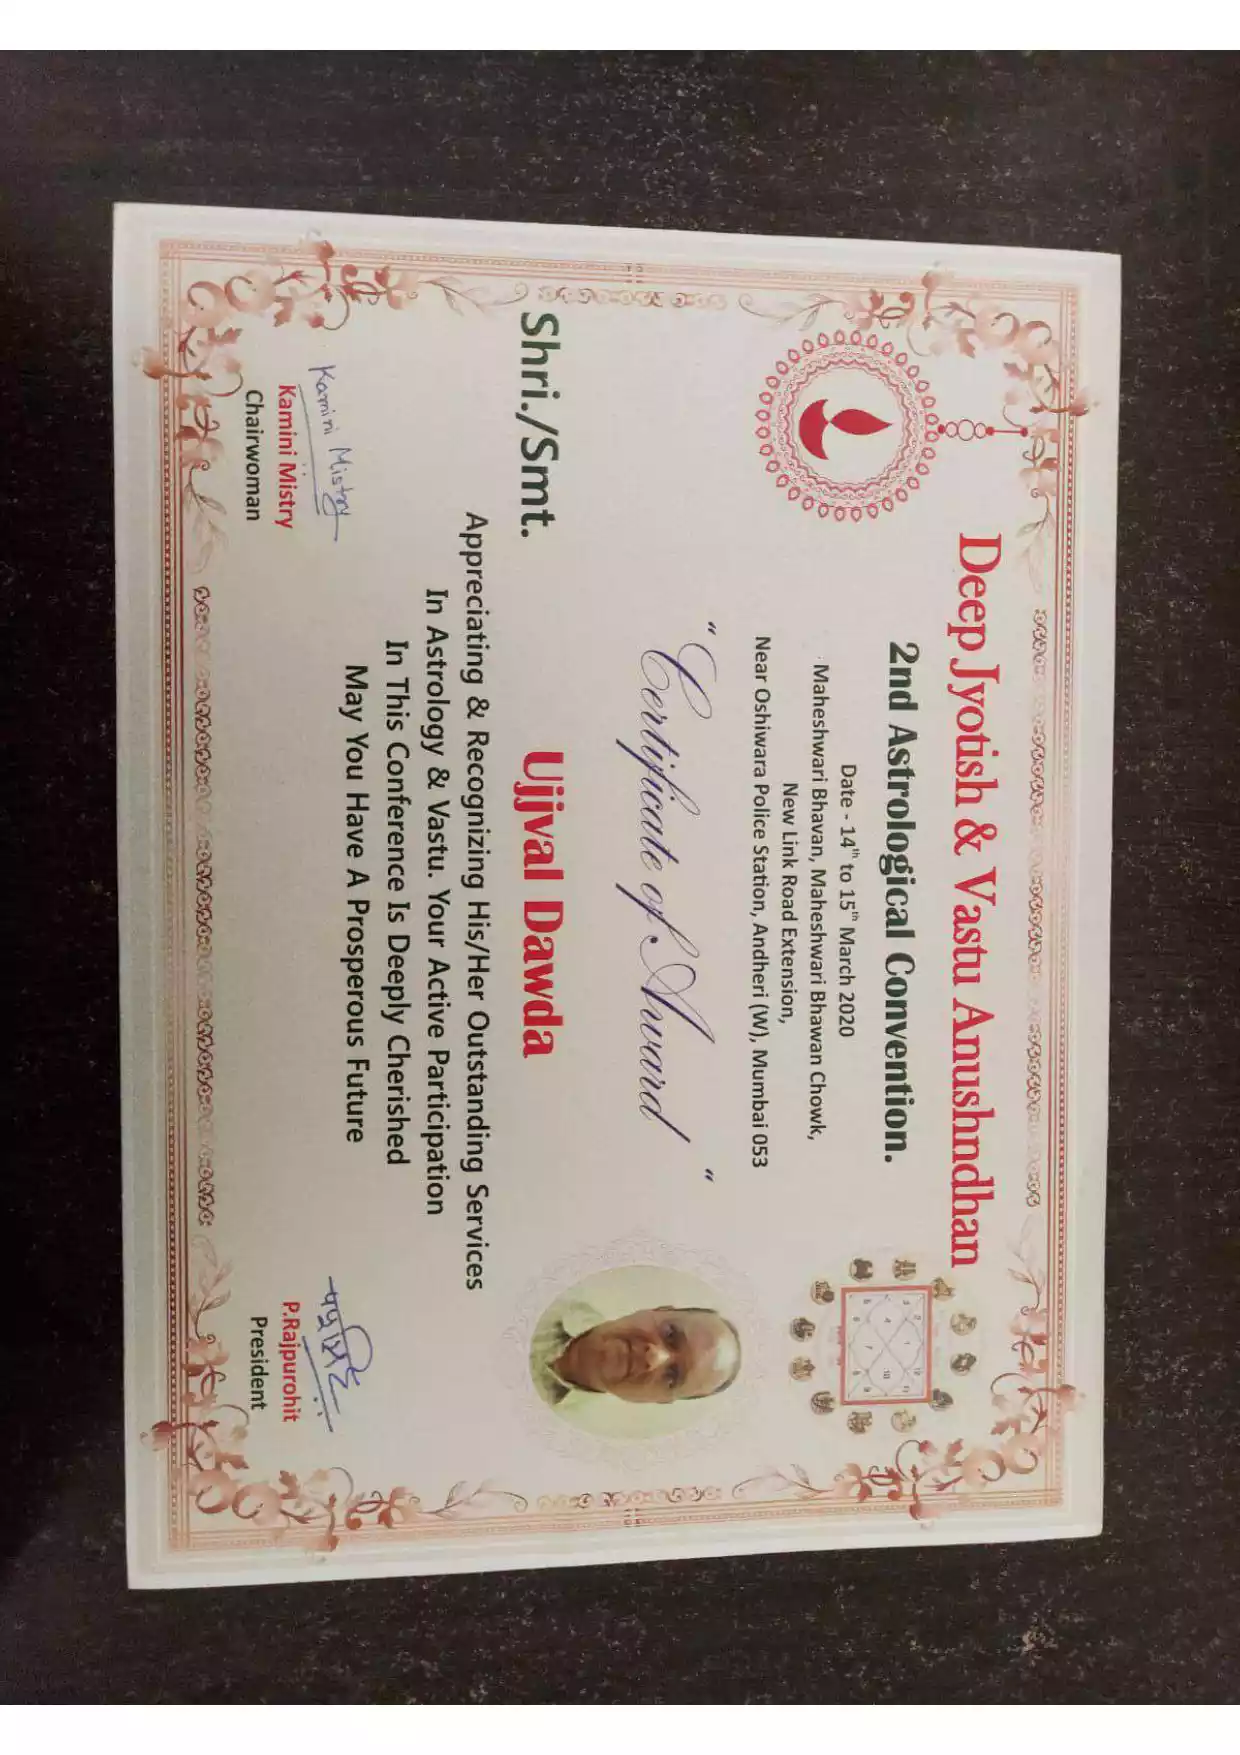  Certificate Of Award